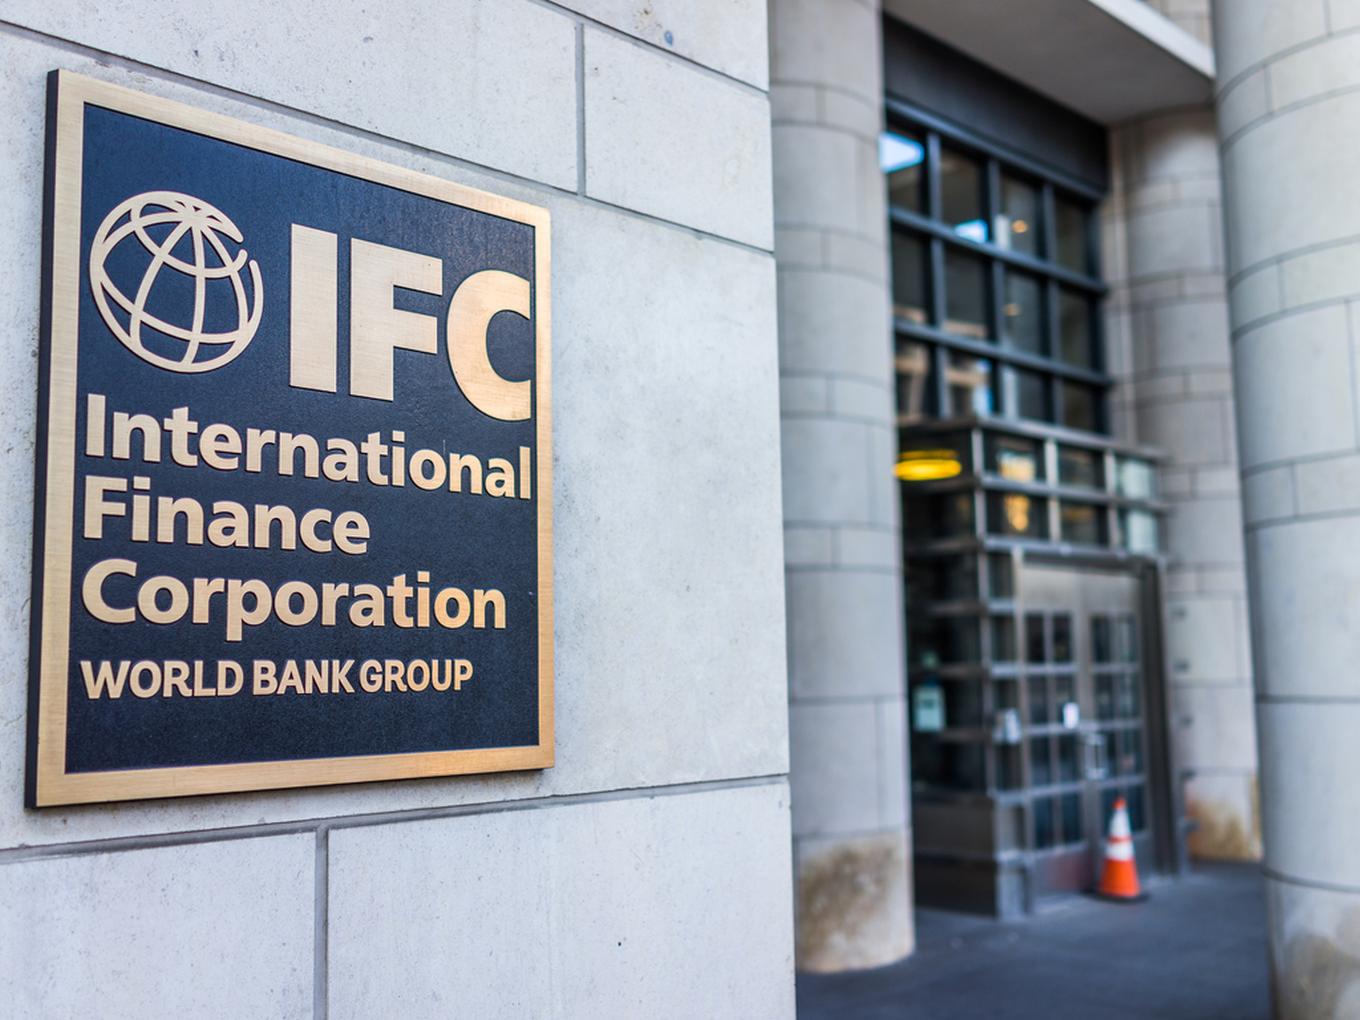 IFC invests in Chiratae